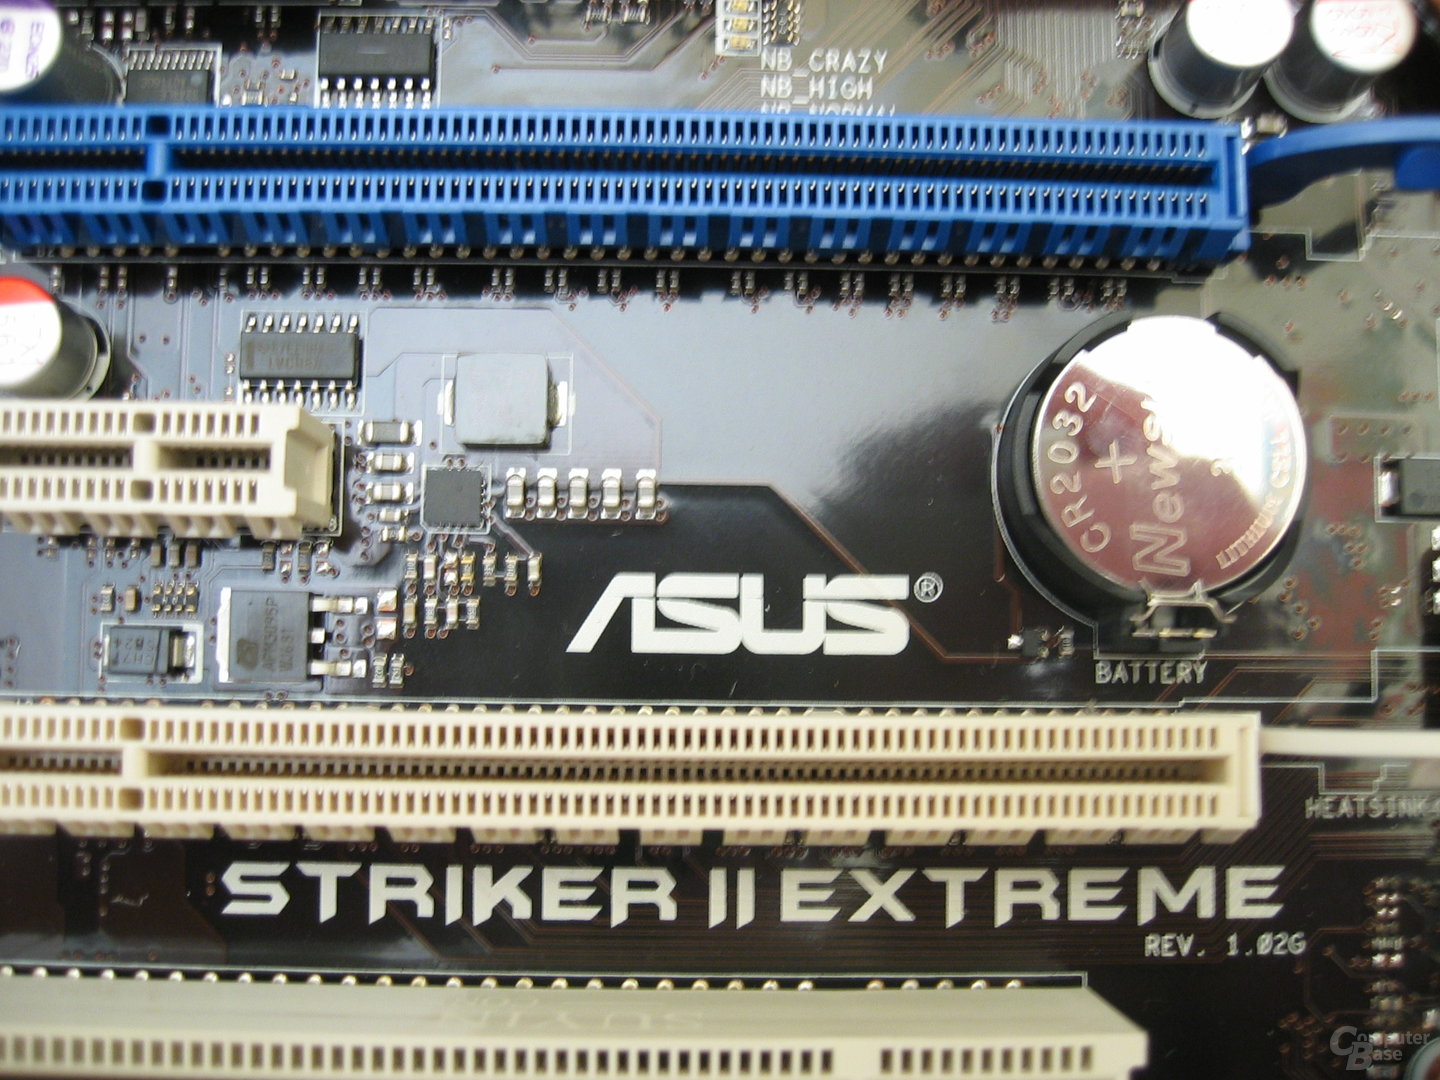 Asus Striker II Extreme